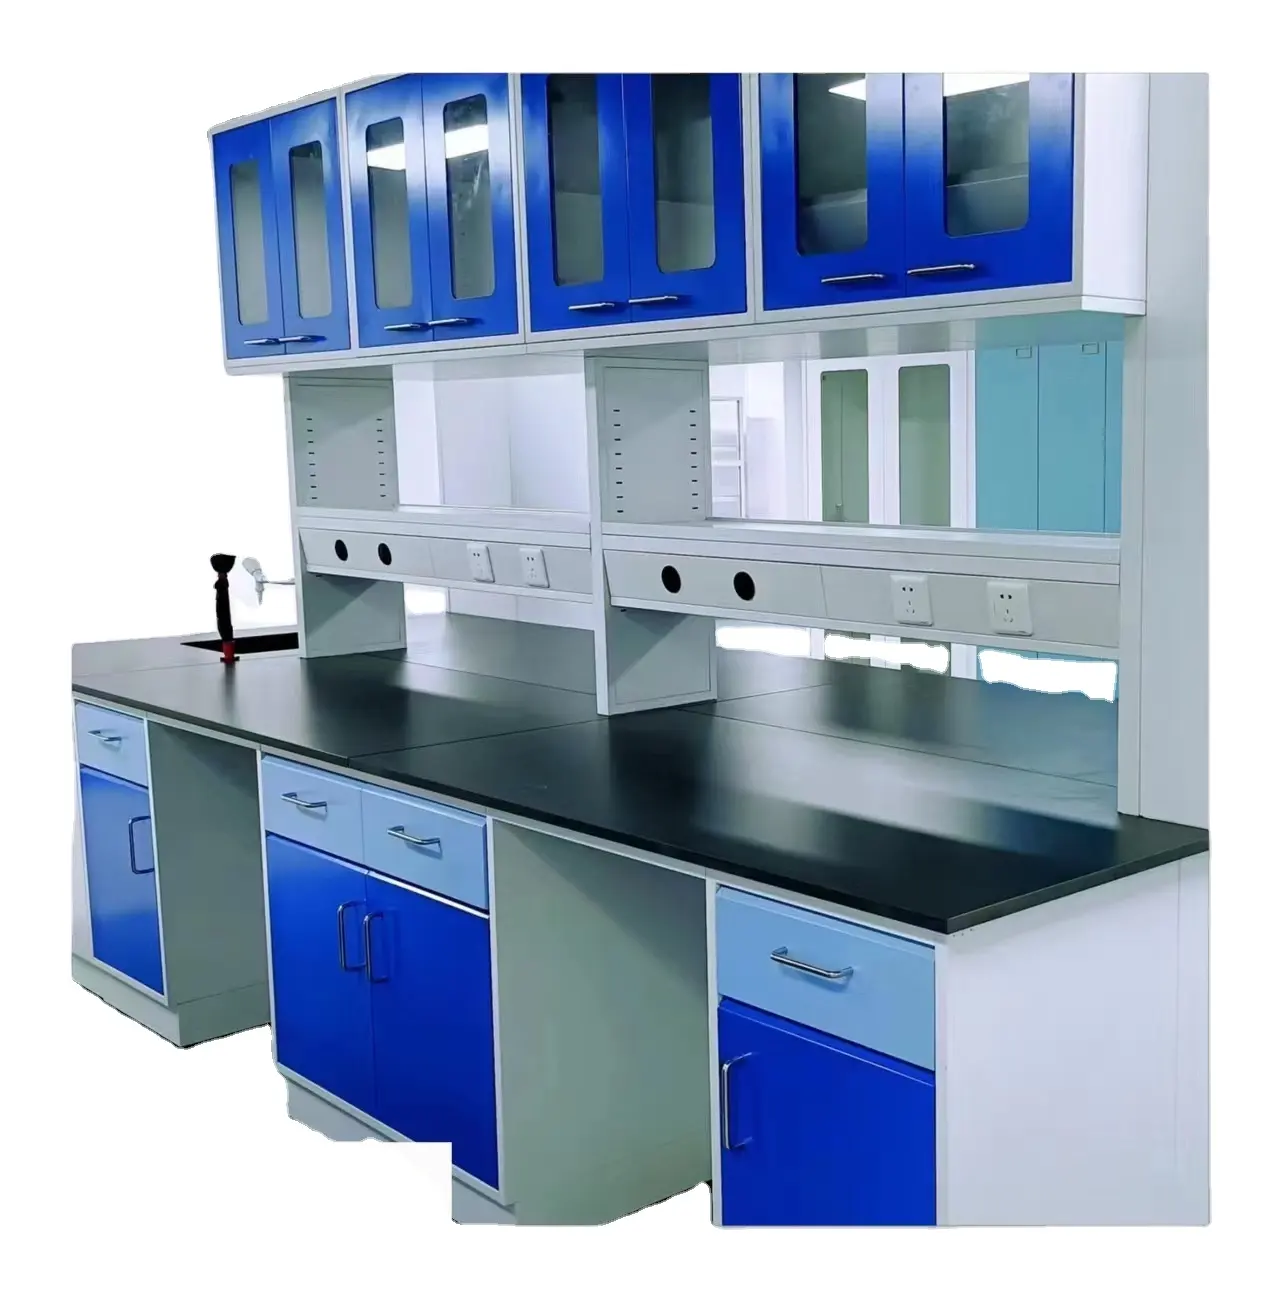 Banco de laboratorio de muebles de laboratorio certificado CE de alta calidad con banco de trabajo montado en el suelo muebles escolares modernos de acero o madera ISO9001